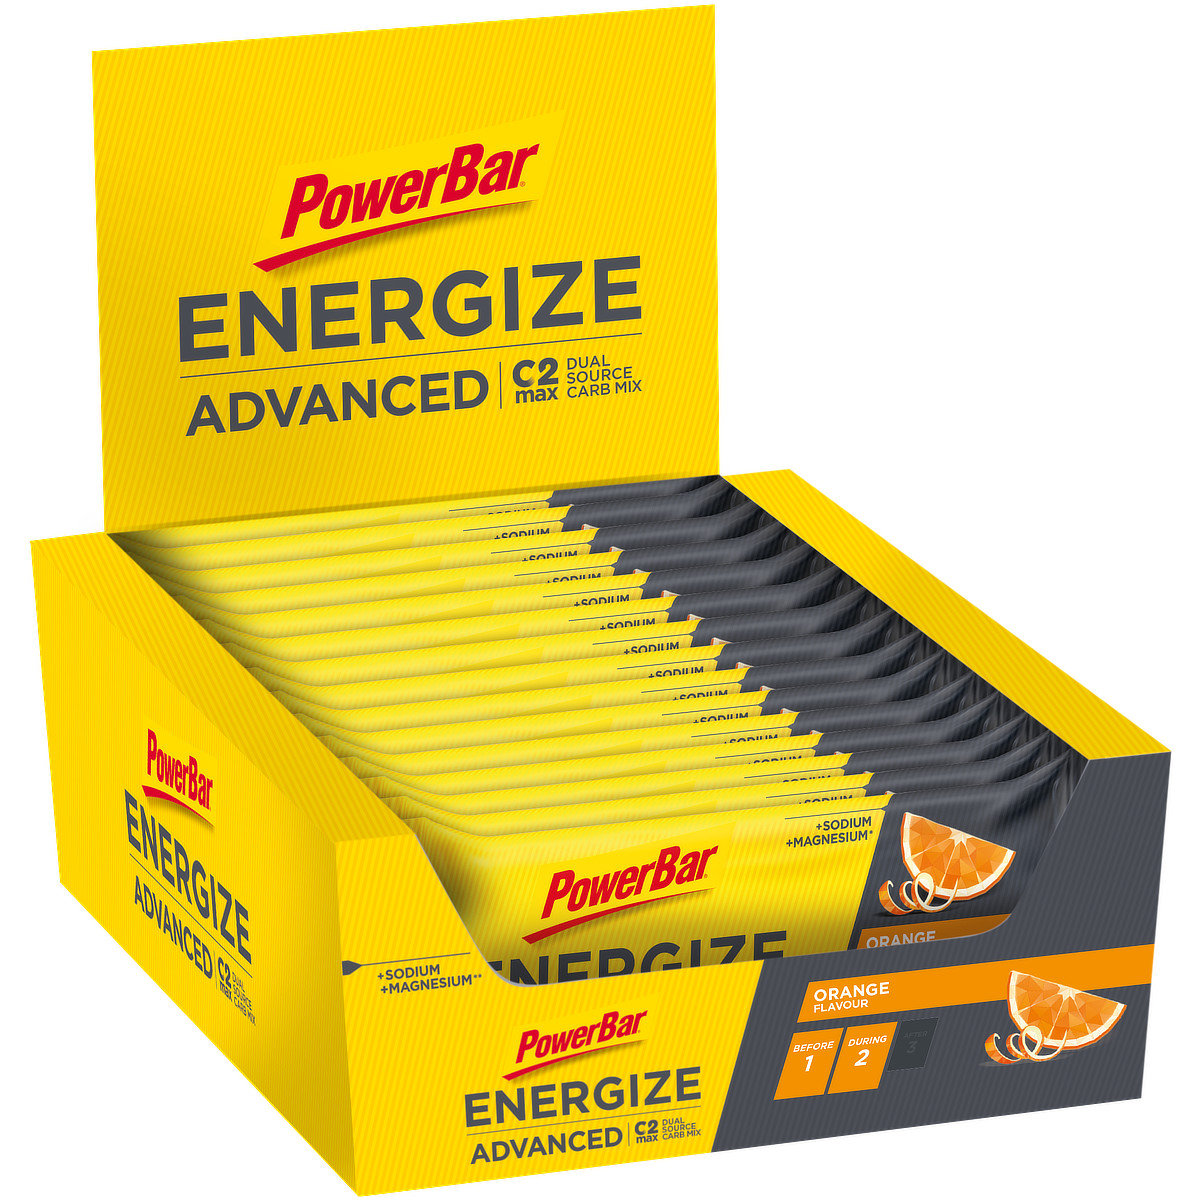 Bild von 15x PowerBar Energize Advanced - Orange (Box)